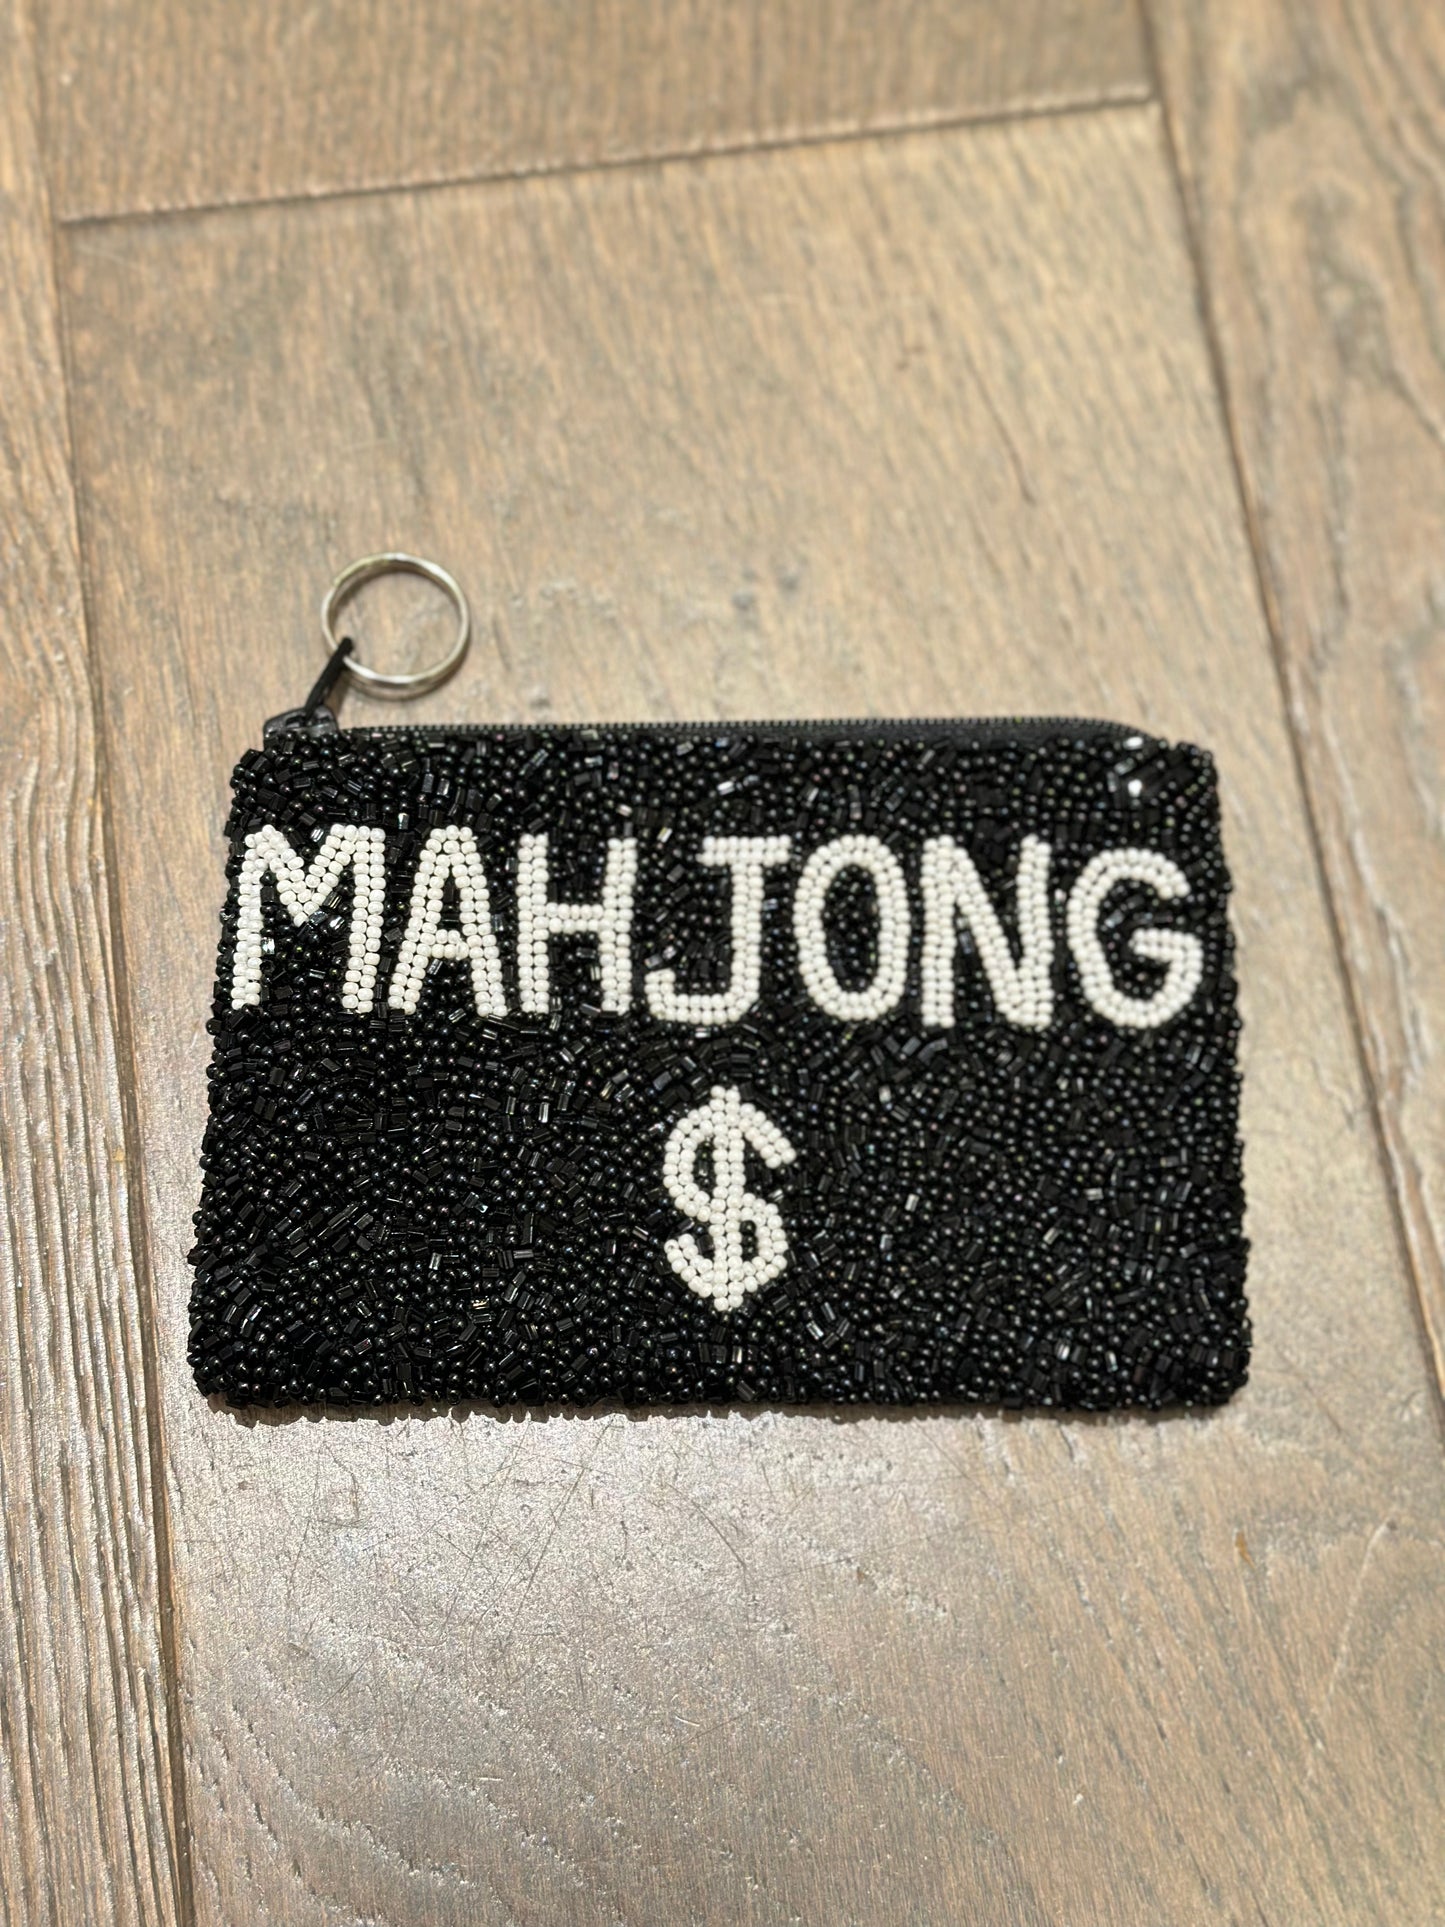 Mahjong $ Coin Purse